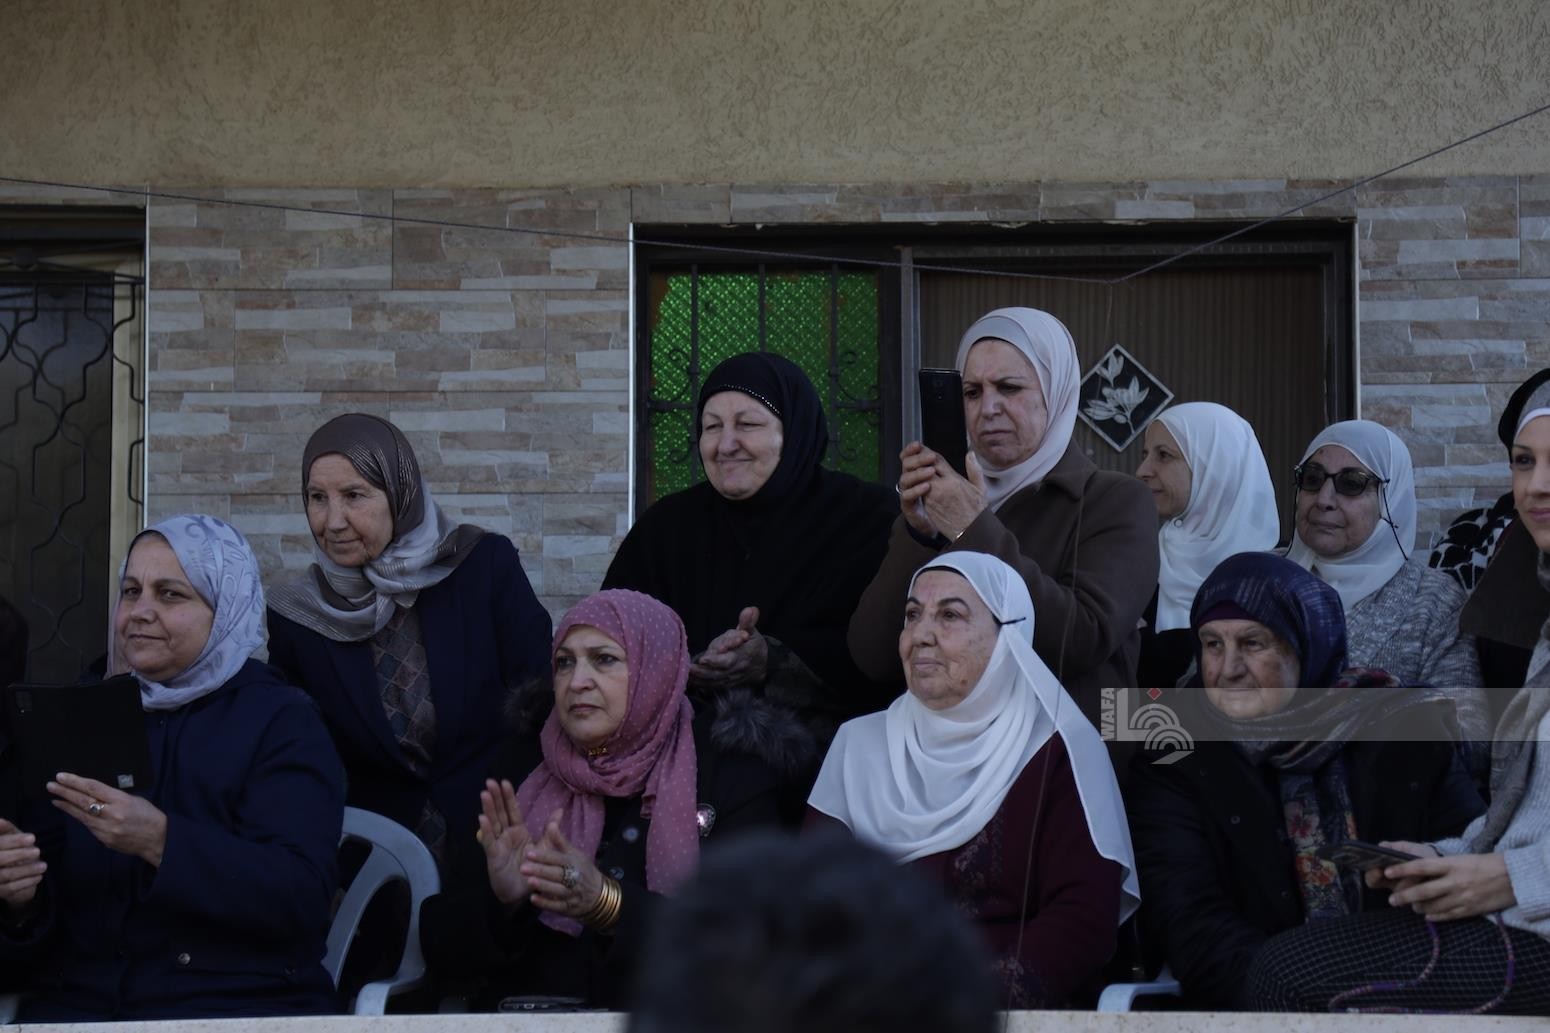 الأسير ماهر يونس يعانق الحرية بعد 40 عاما من الأسر في سجون الاحتلال 34.jpg